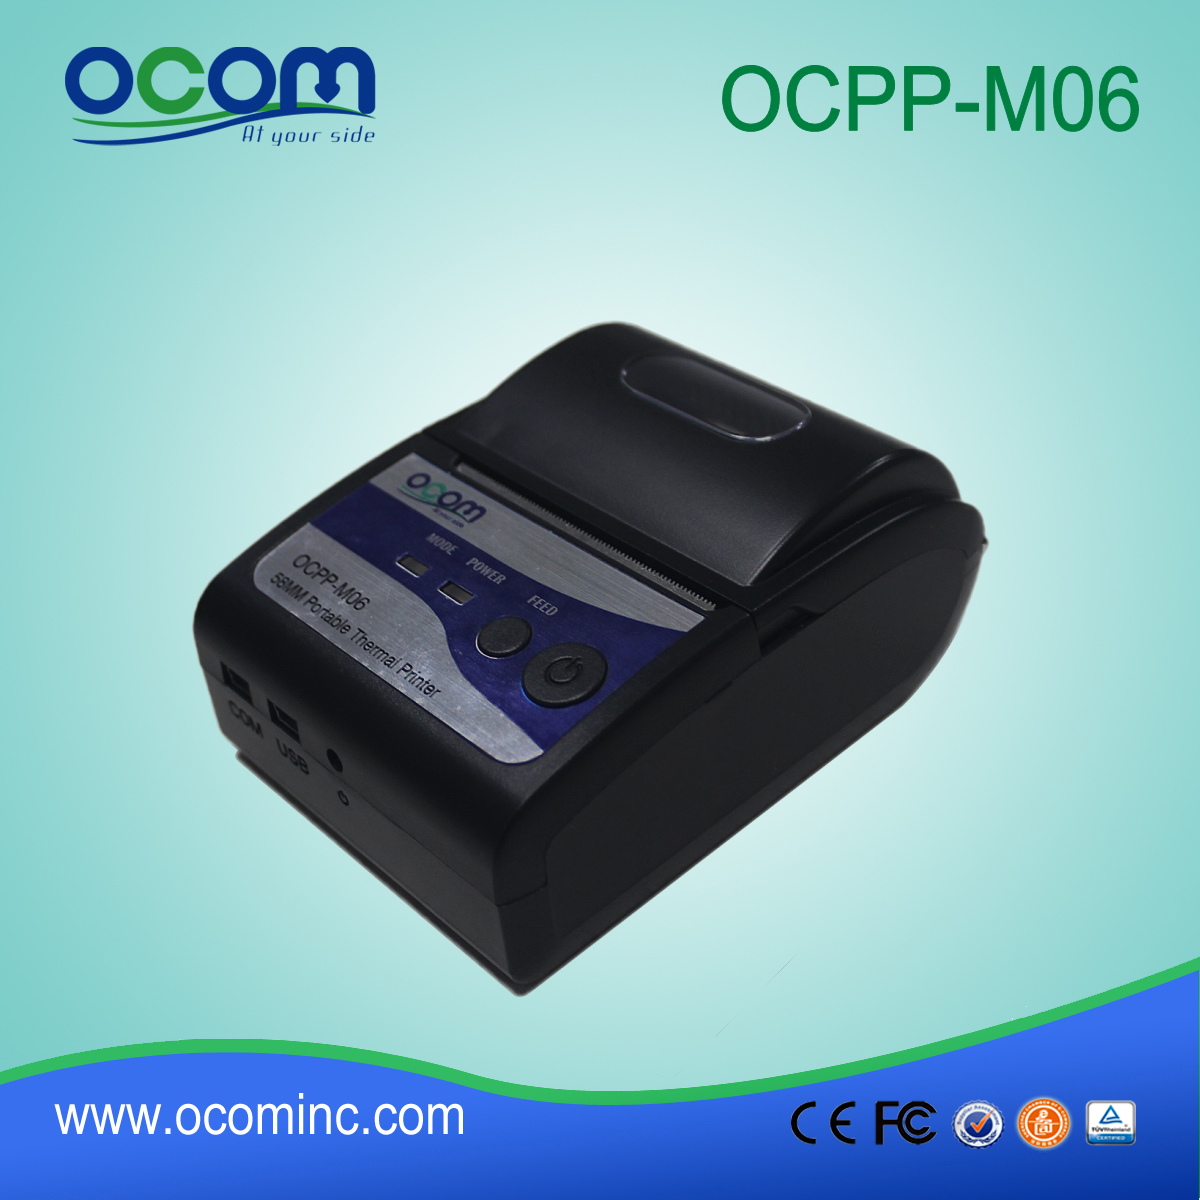 (OCPP-M06) Chiny OCOM dobre 58mm sprzedaży przenośny bluetooth termiczna drukarka przenośna